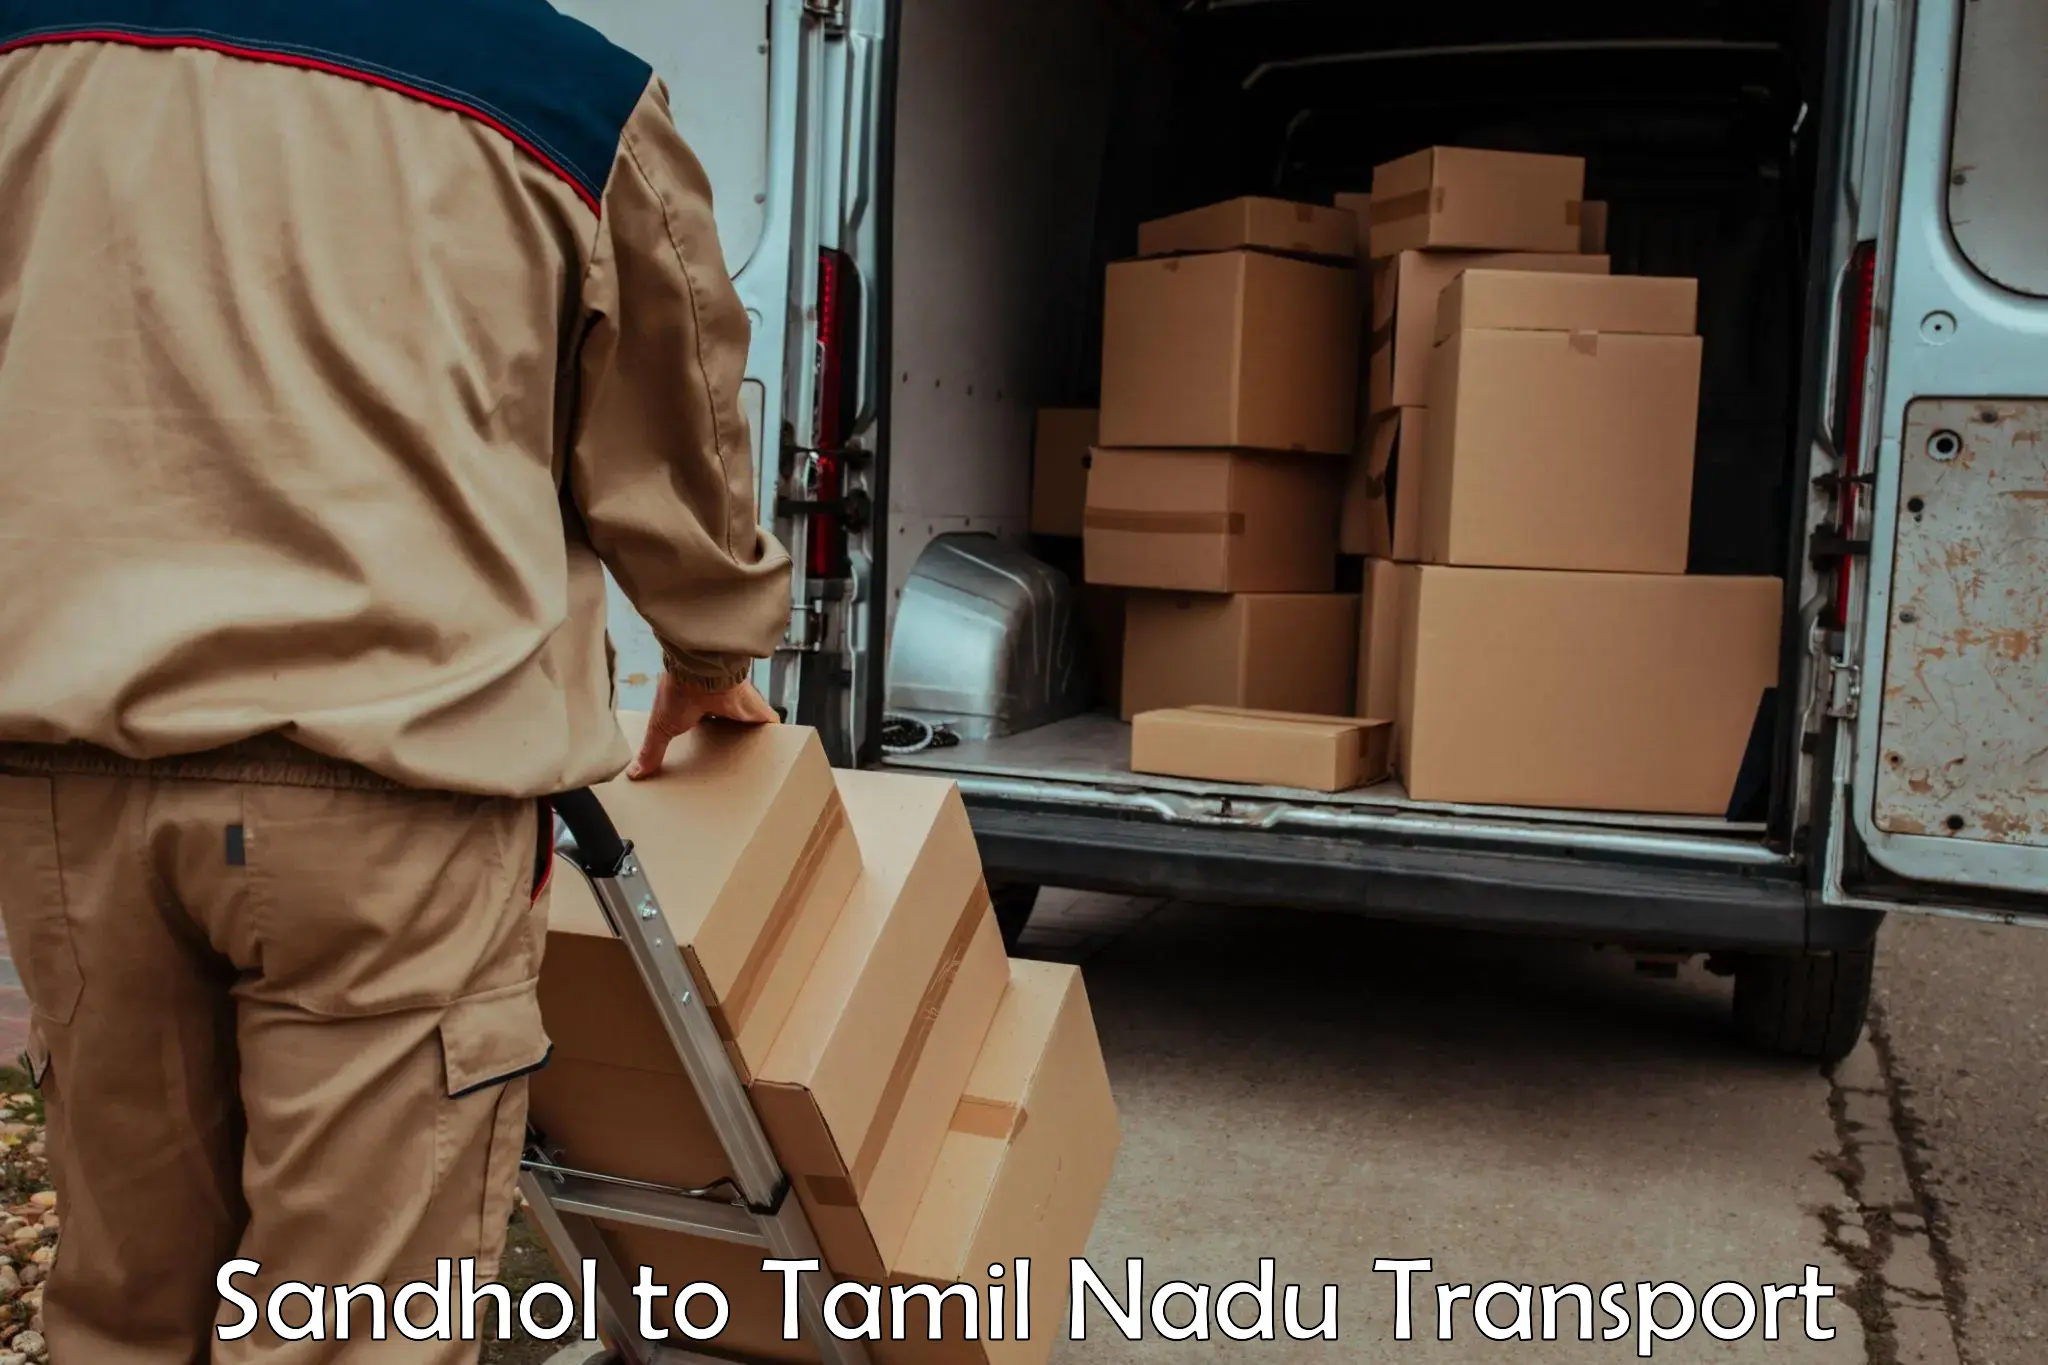 Online transport service Sandhol to Tamil Nadu